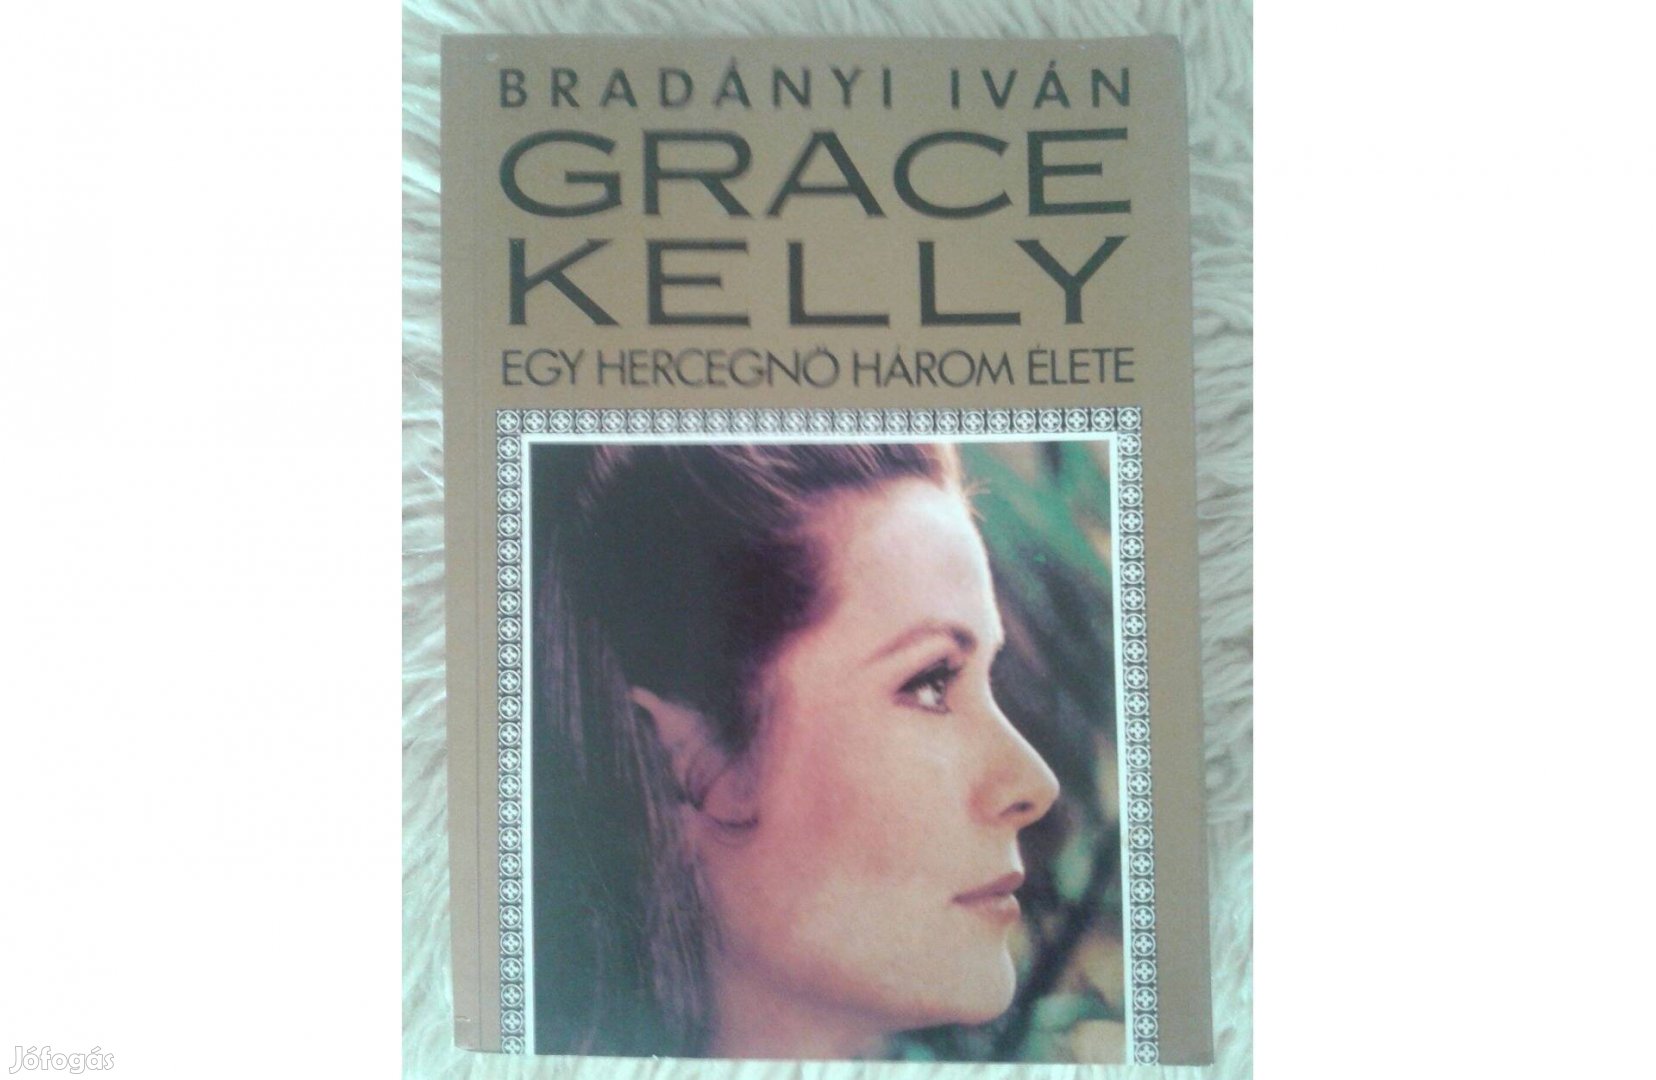 Bradányi Iván: Grace Kelly könyv szinte ingyen